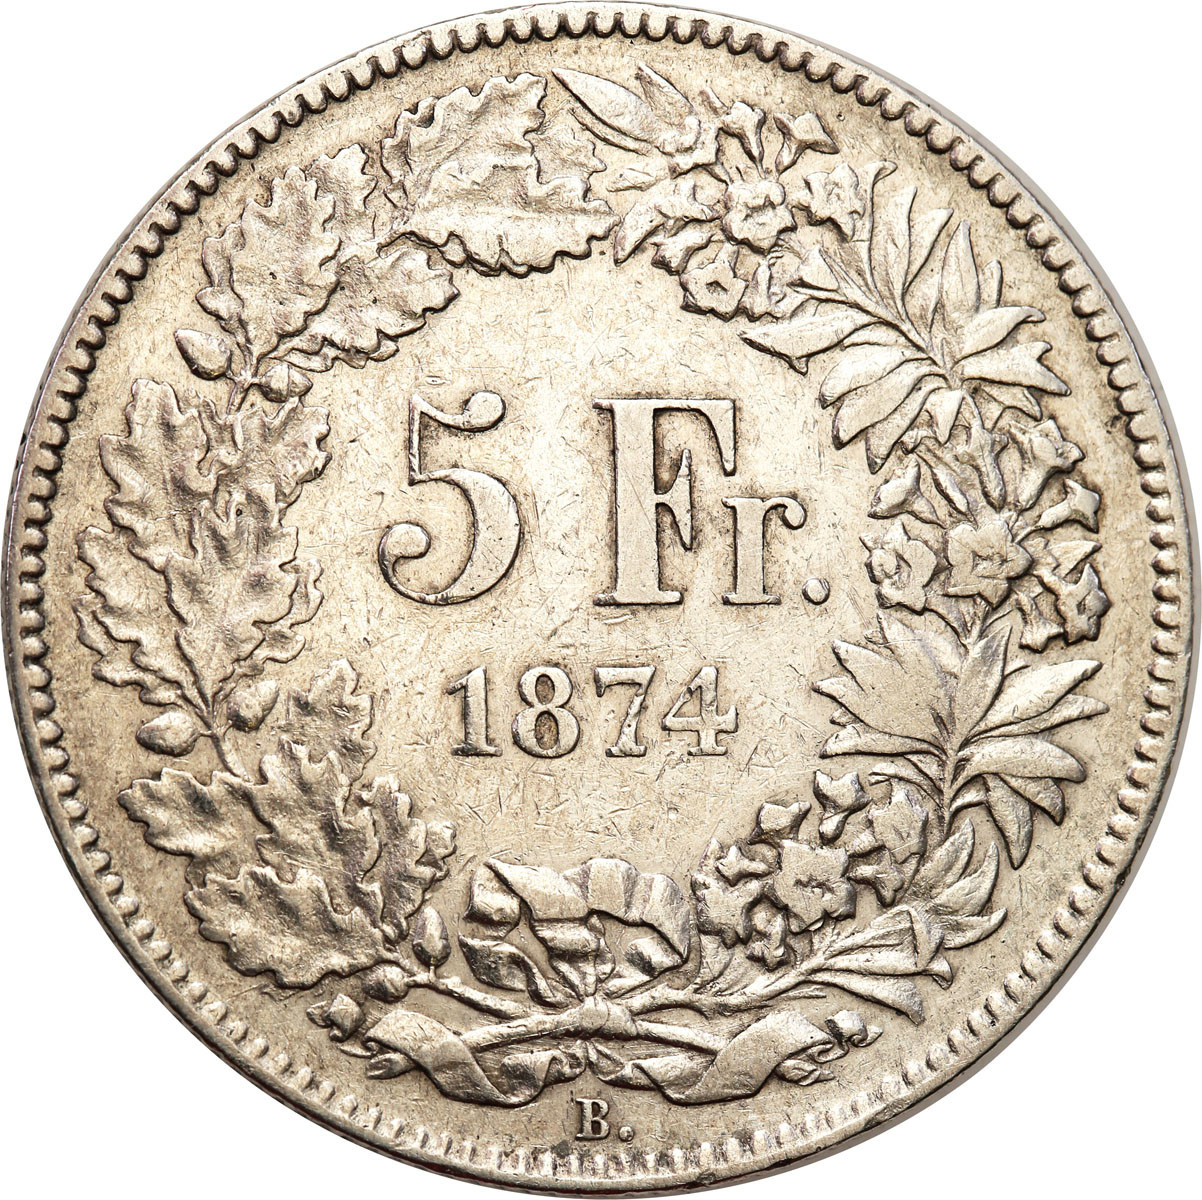 Szwajcaria. 5 franków 1874 B, Berno - rzadsze